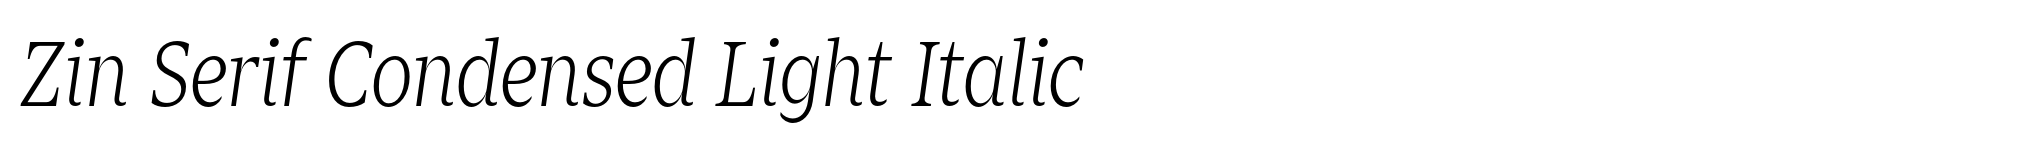 Zin Serif Condensed Light Italic image